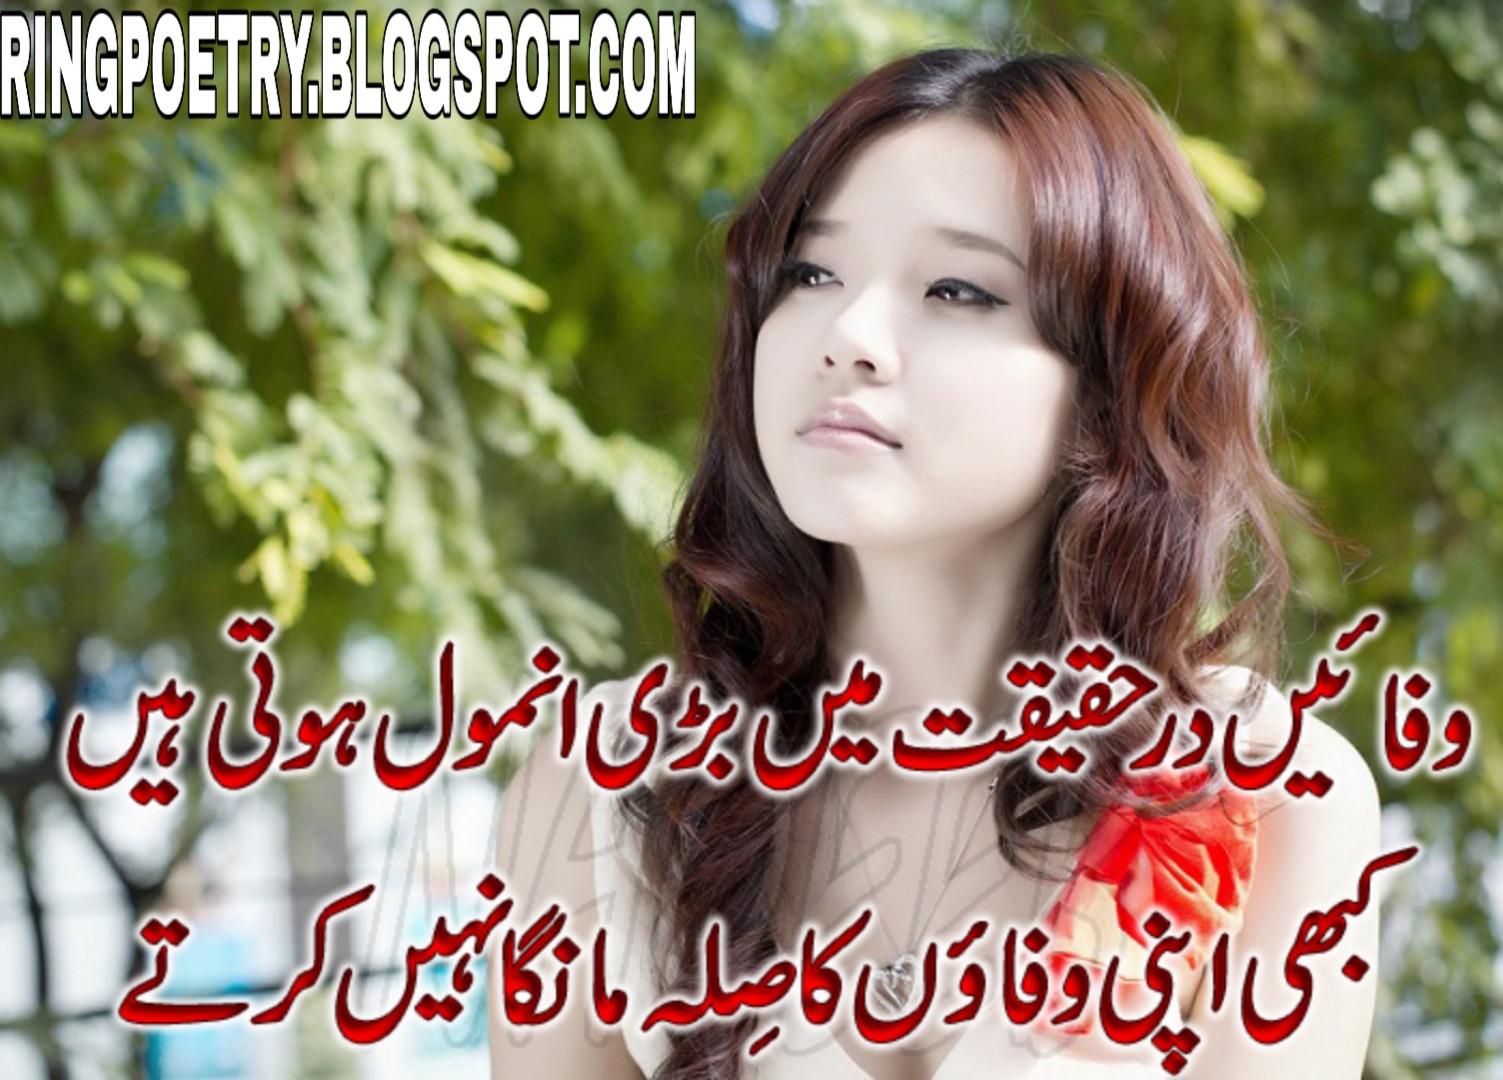 urdu sad poetry images facebook